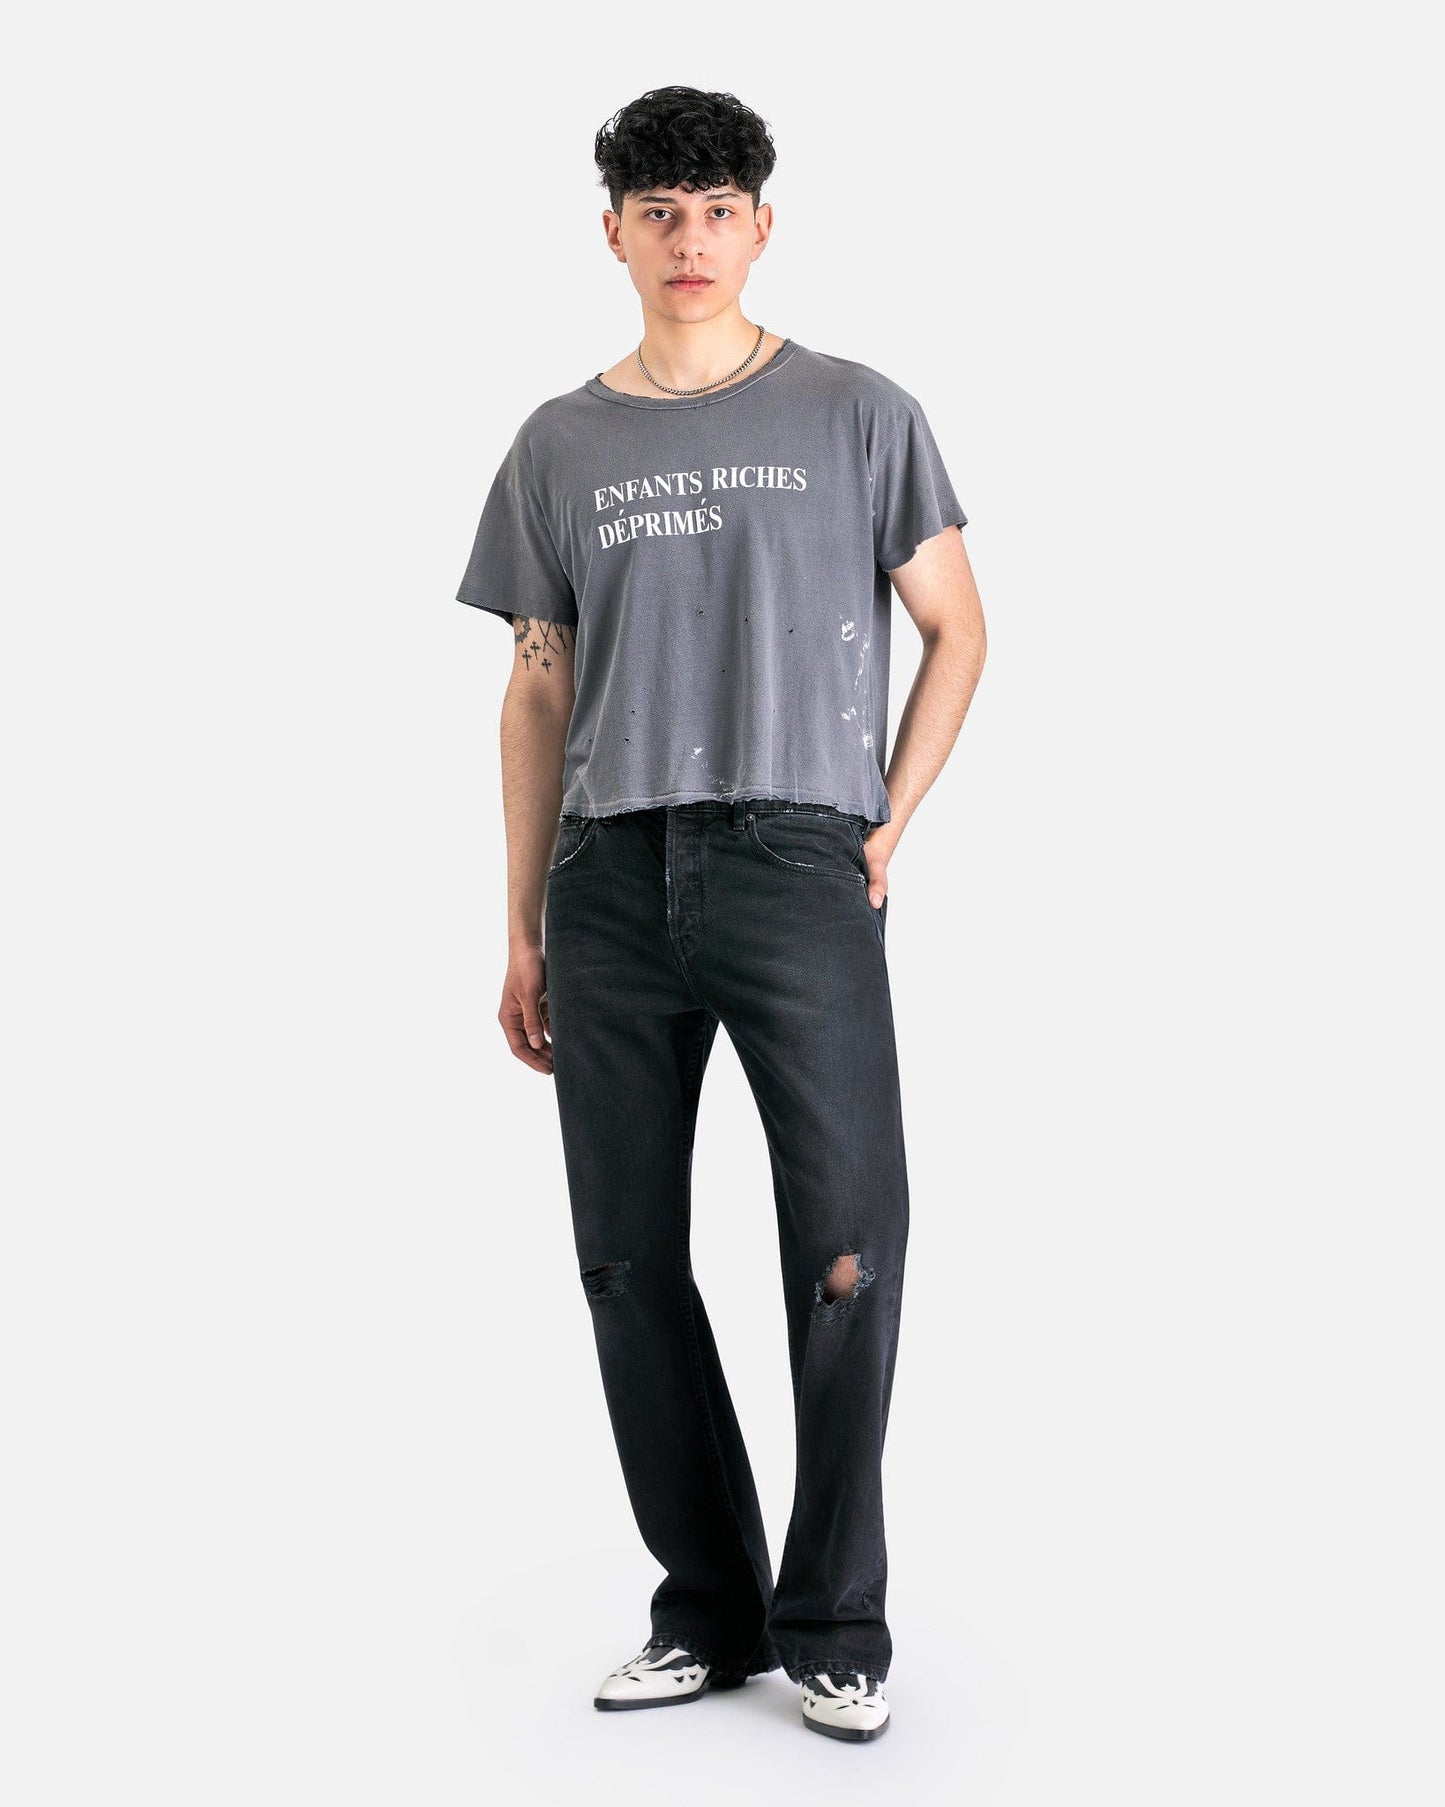 Enfants Riches Deprimes Men's T-Shirts Classic Logo T-Shirt in Paint Grey